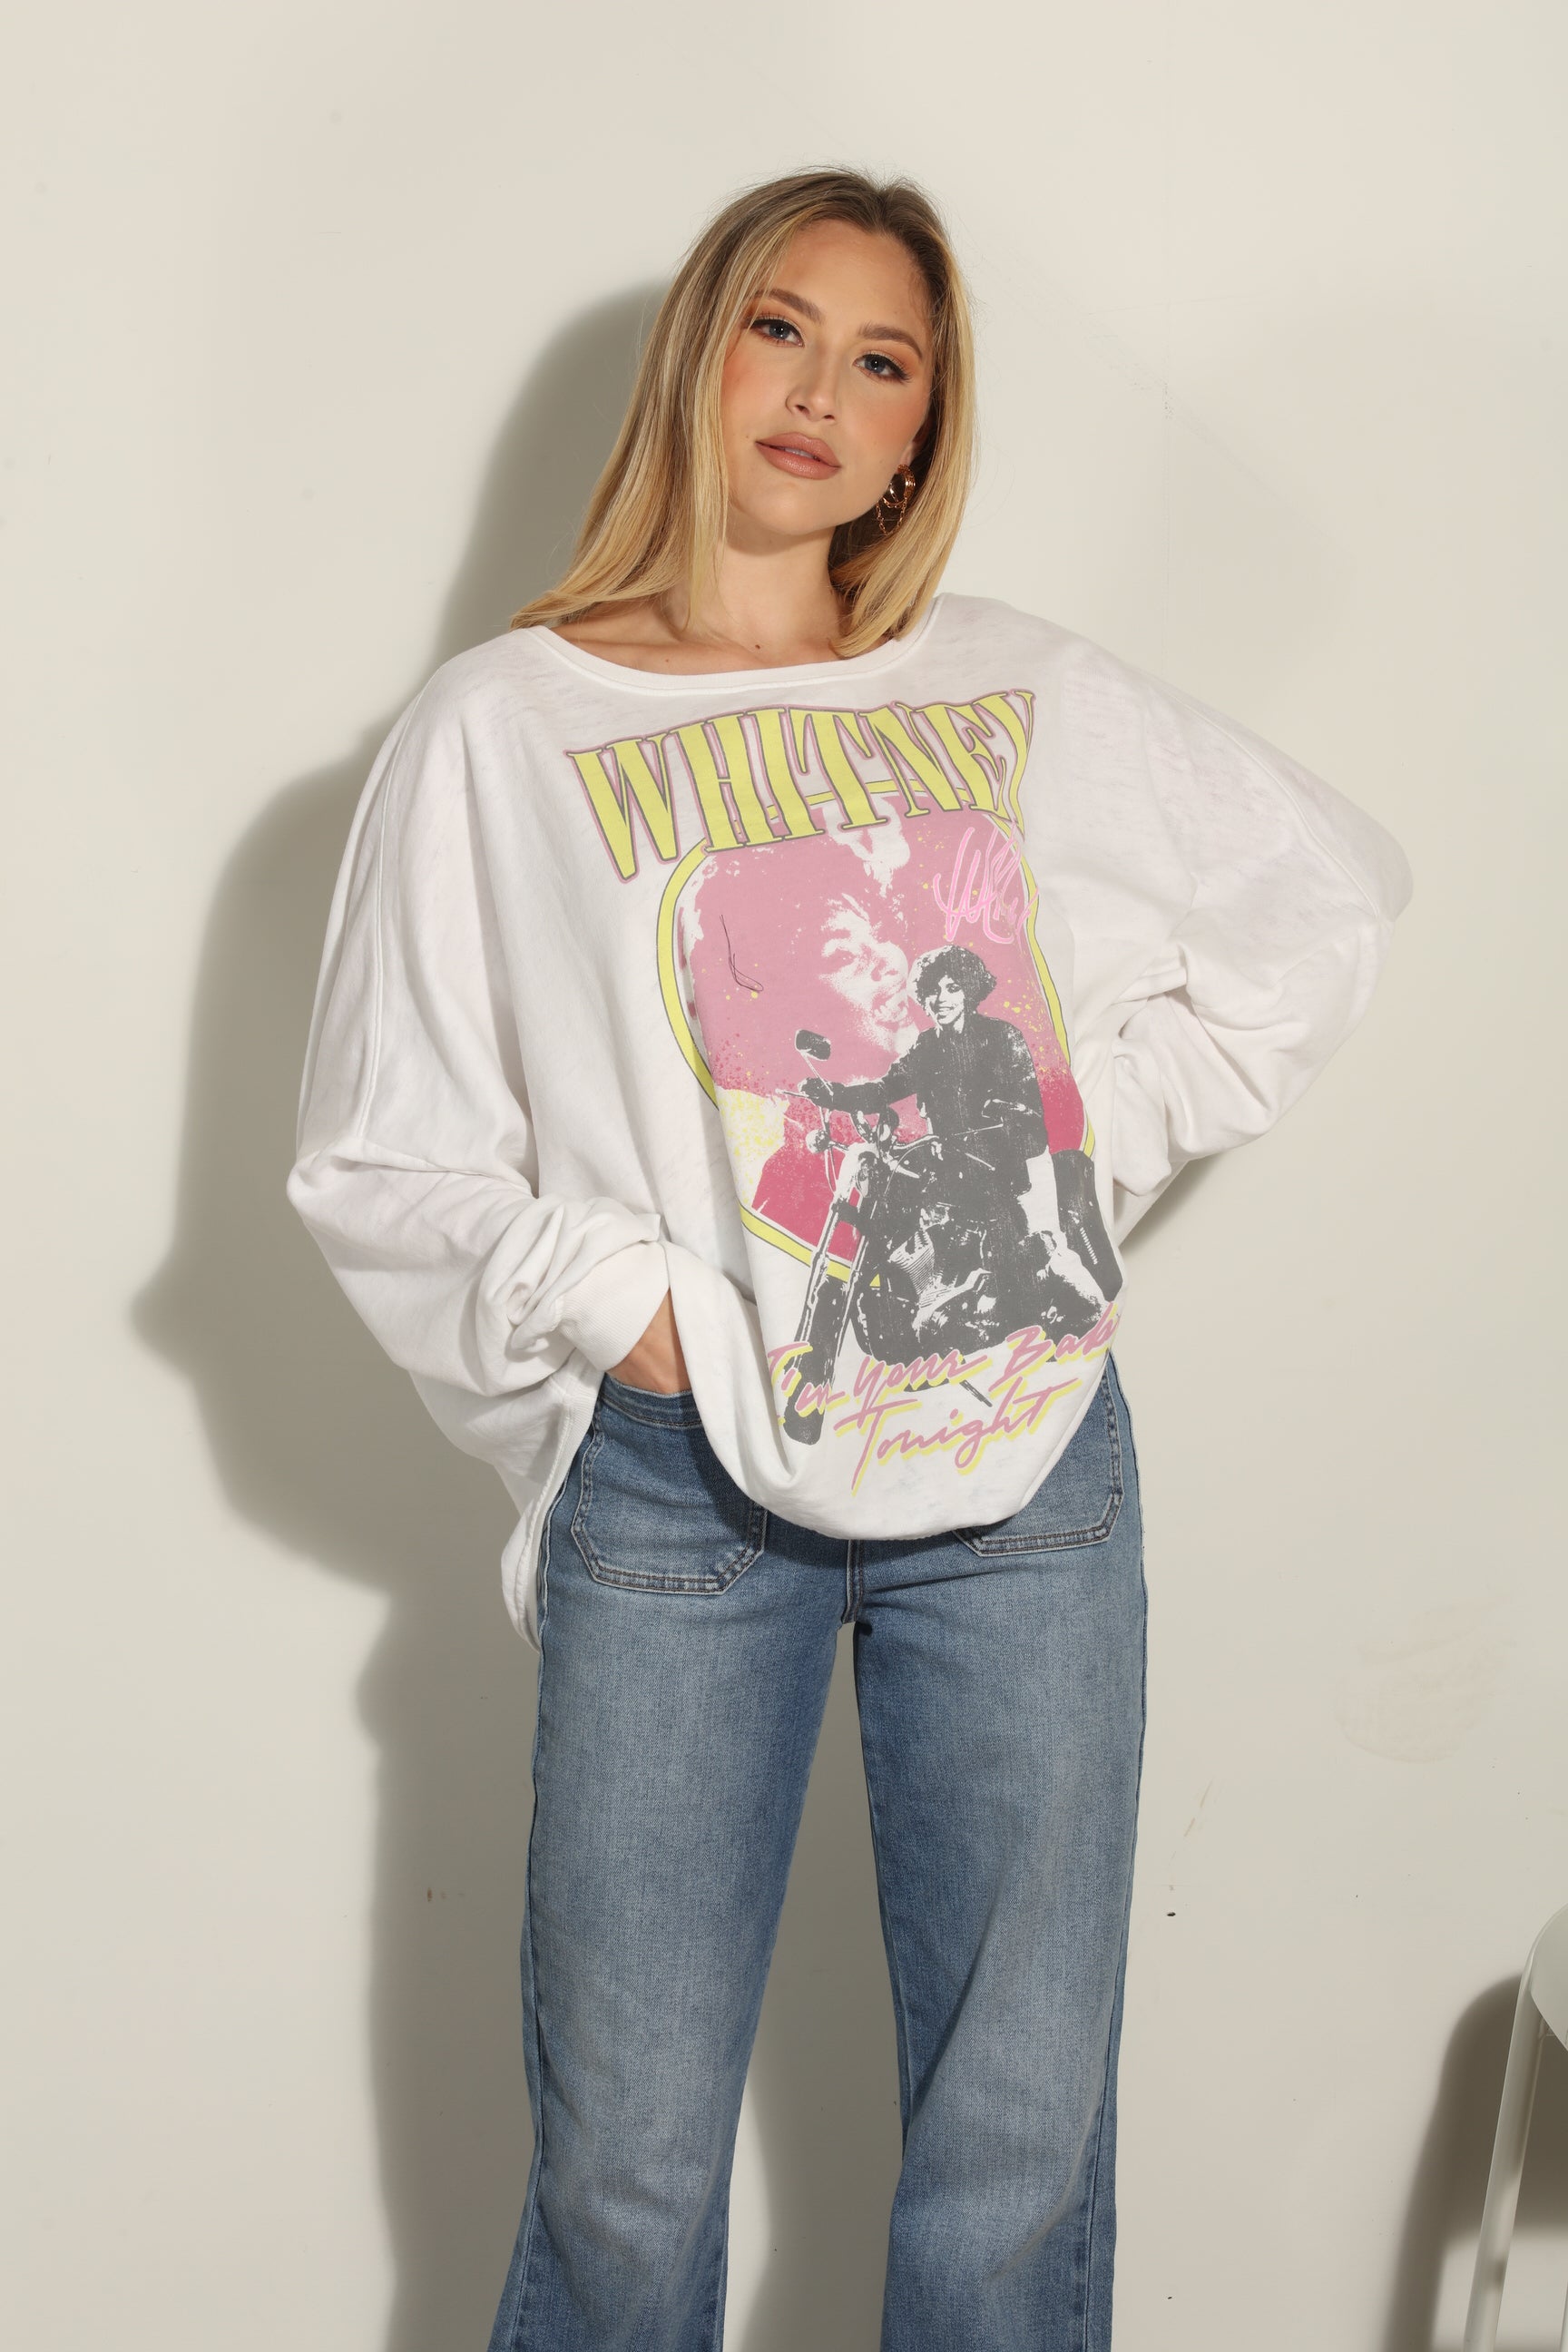 Whitney Houston One Size Sweatshirt